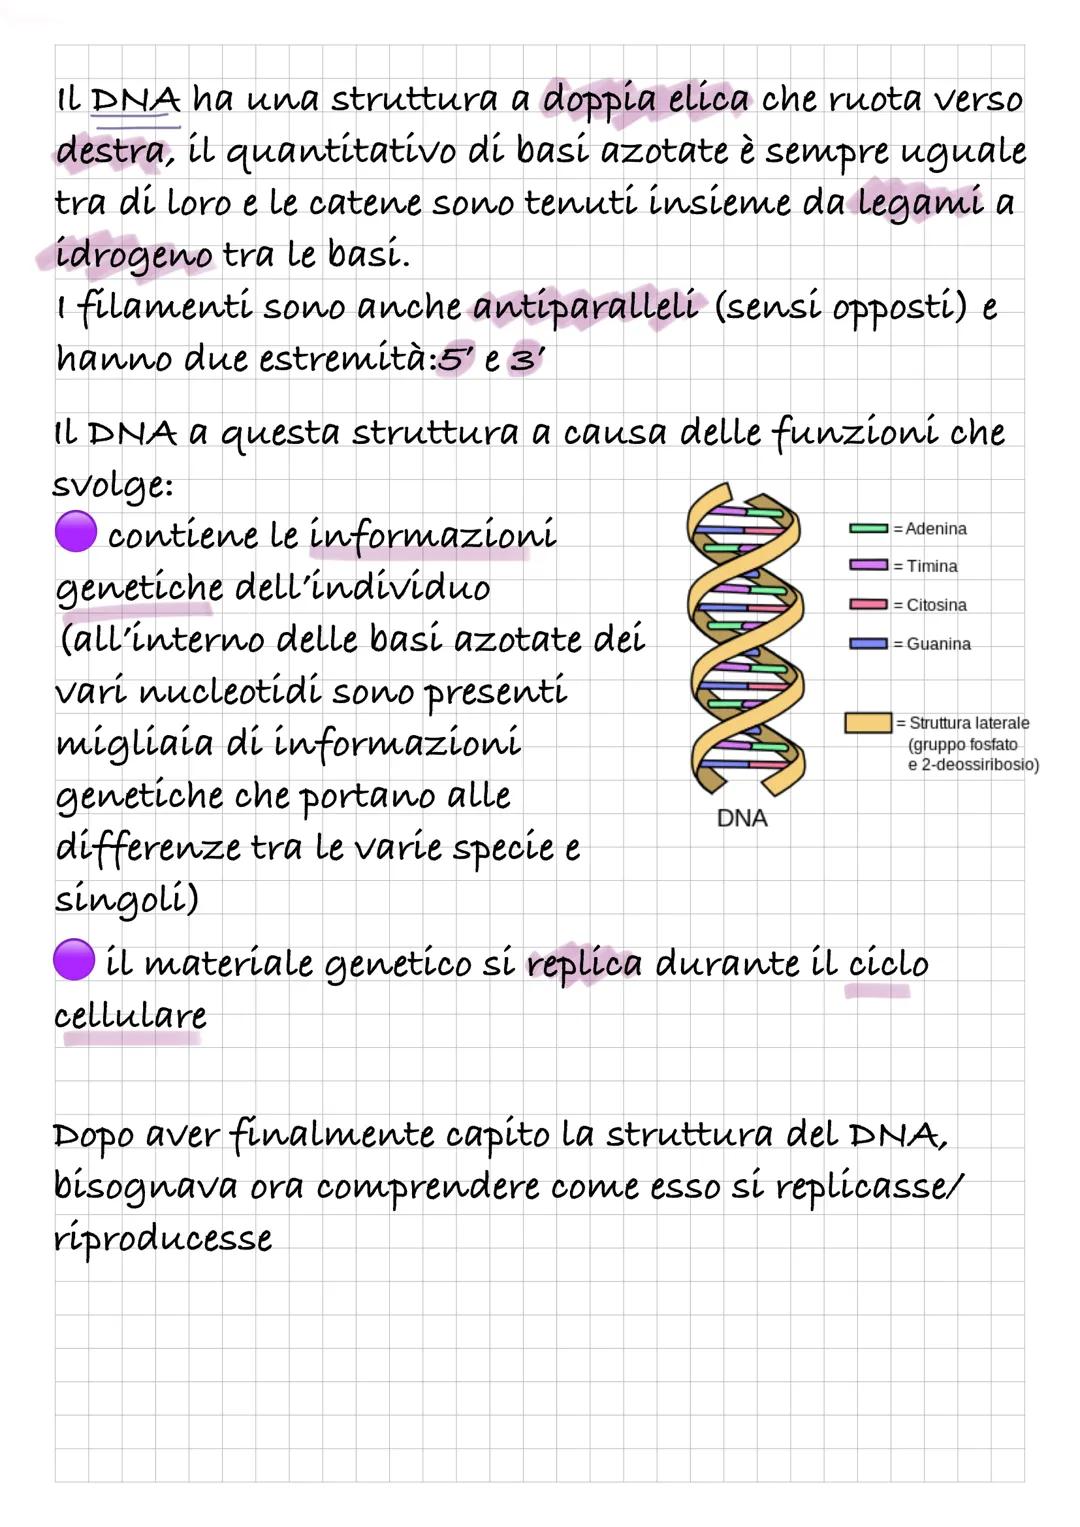 REPLICAZIONE DEL DNA
Intanto diamo una rapida definizione di DNA:
Il DNA è un polímero, formato quindi da monomeri: i
nucleotidí.
I nucleoti